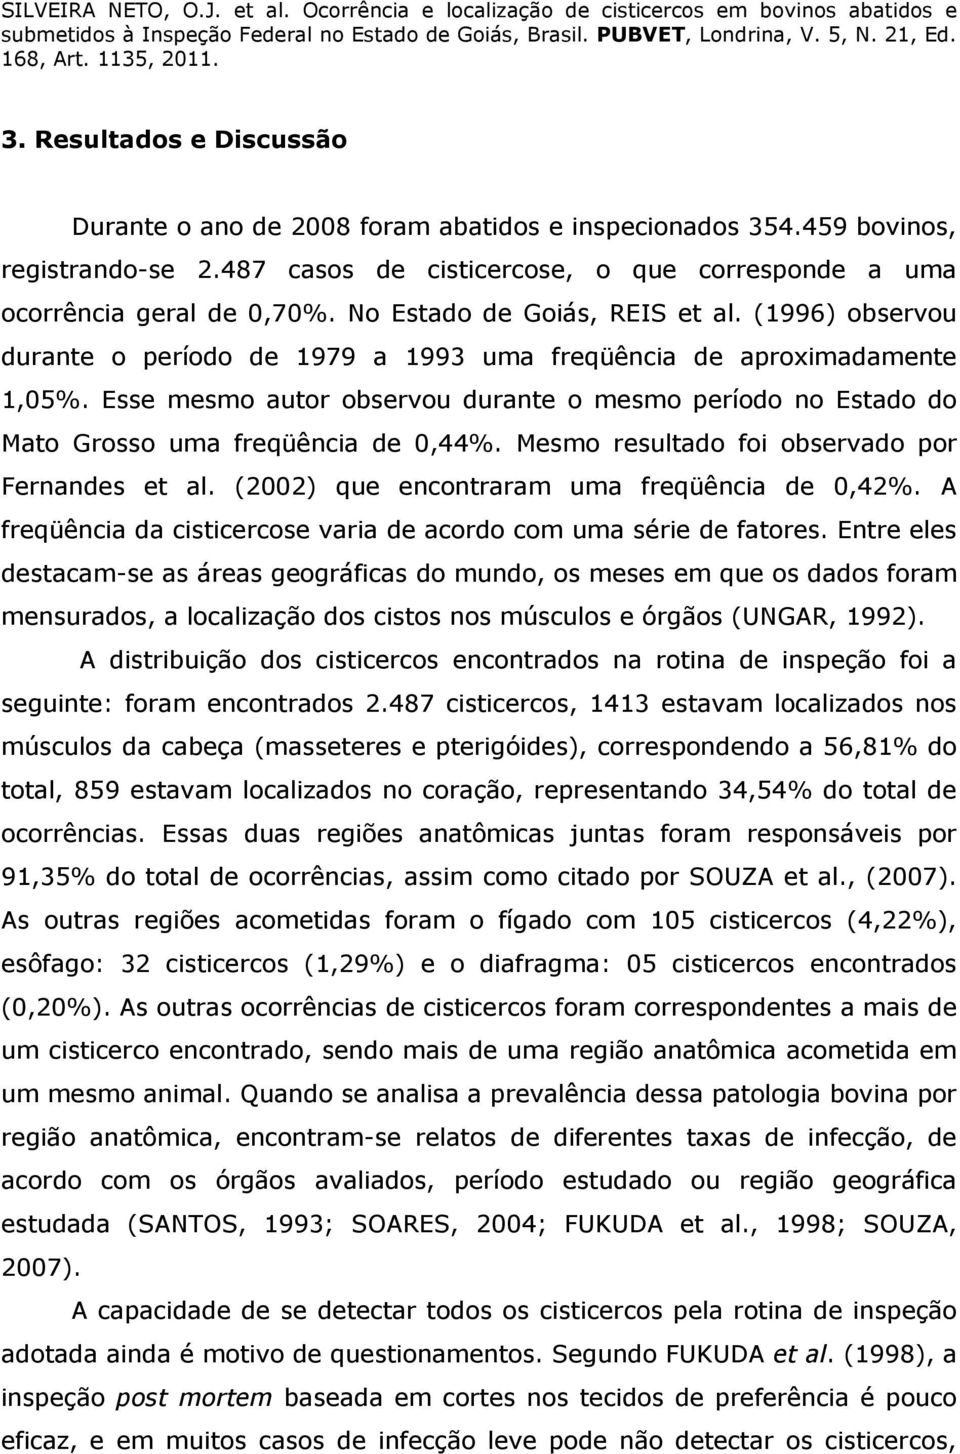 Esse mesmo autor observou durante o mesmo período no Estado do Mato Grosso uma freqüência de 0,44%. Mesmo resultado foi observado por Fernandes et al. (2002) que encontraram uma freqüência de 0,42%.